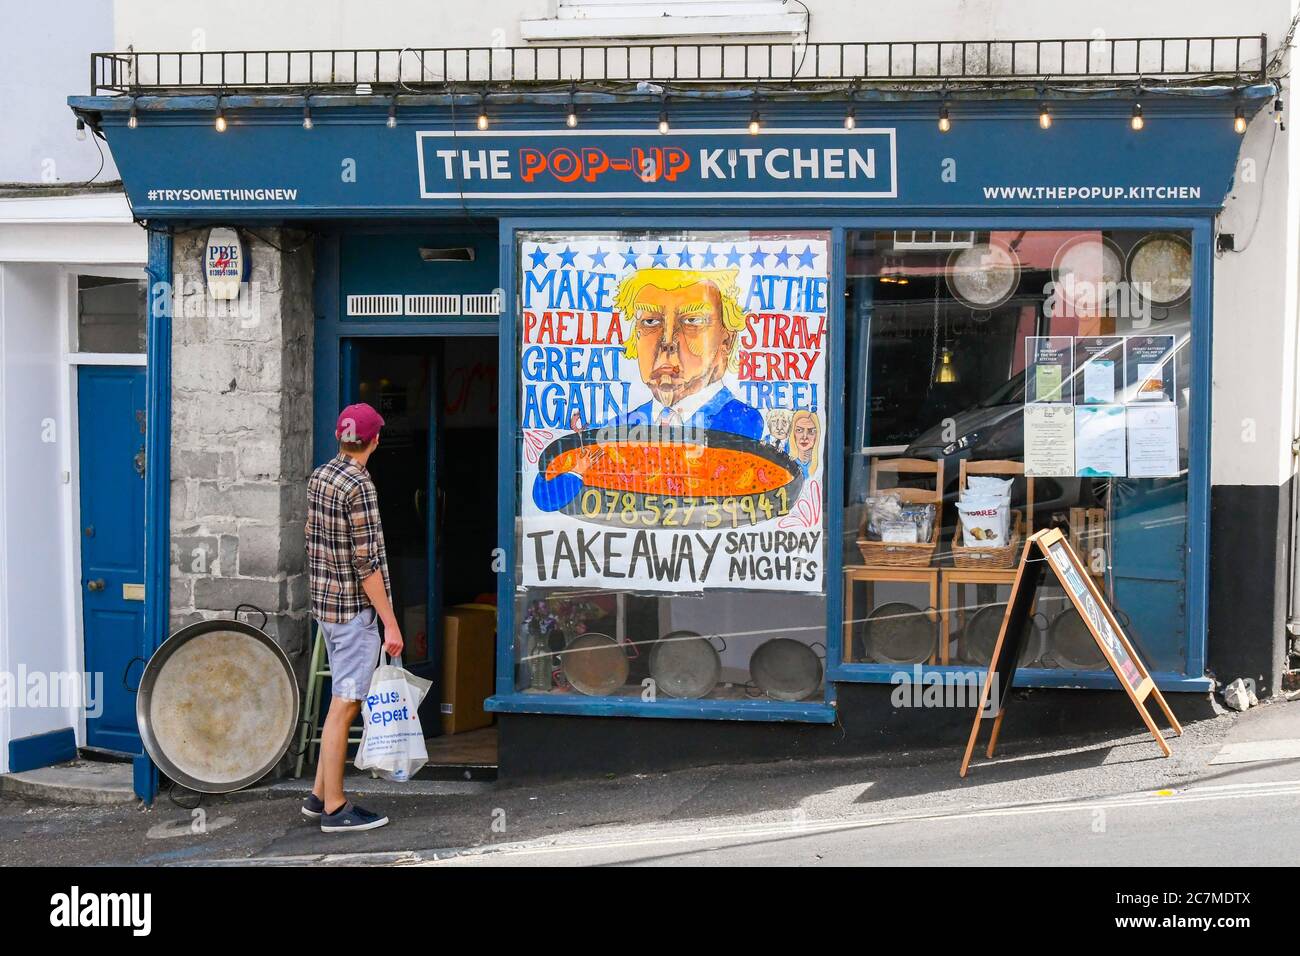 Lyme Regis, Dorset, Großbritannien. Juli 2020. Die Pop-up-Küche im Badeort Lyme Regis in Dorset hat ein großes Banner mit einem Cartoon-Bild von Präsident Donald Trump mit einem Slogan "Make Paella Great Again". Bildquelle: Graham Hunt/Alamy Live News Stockfoto